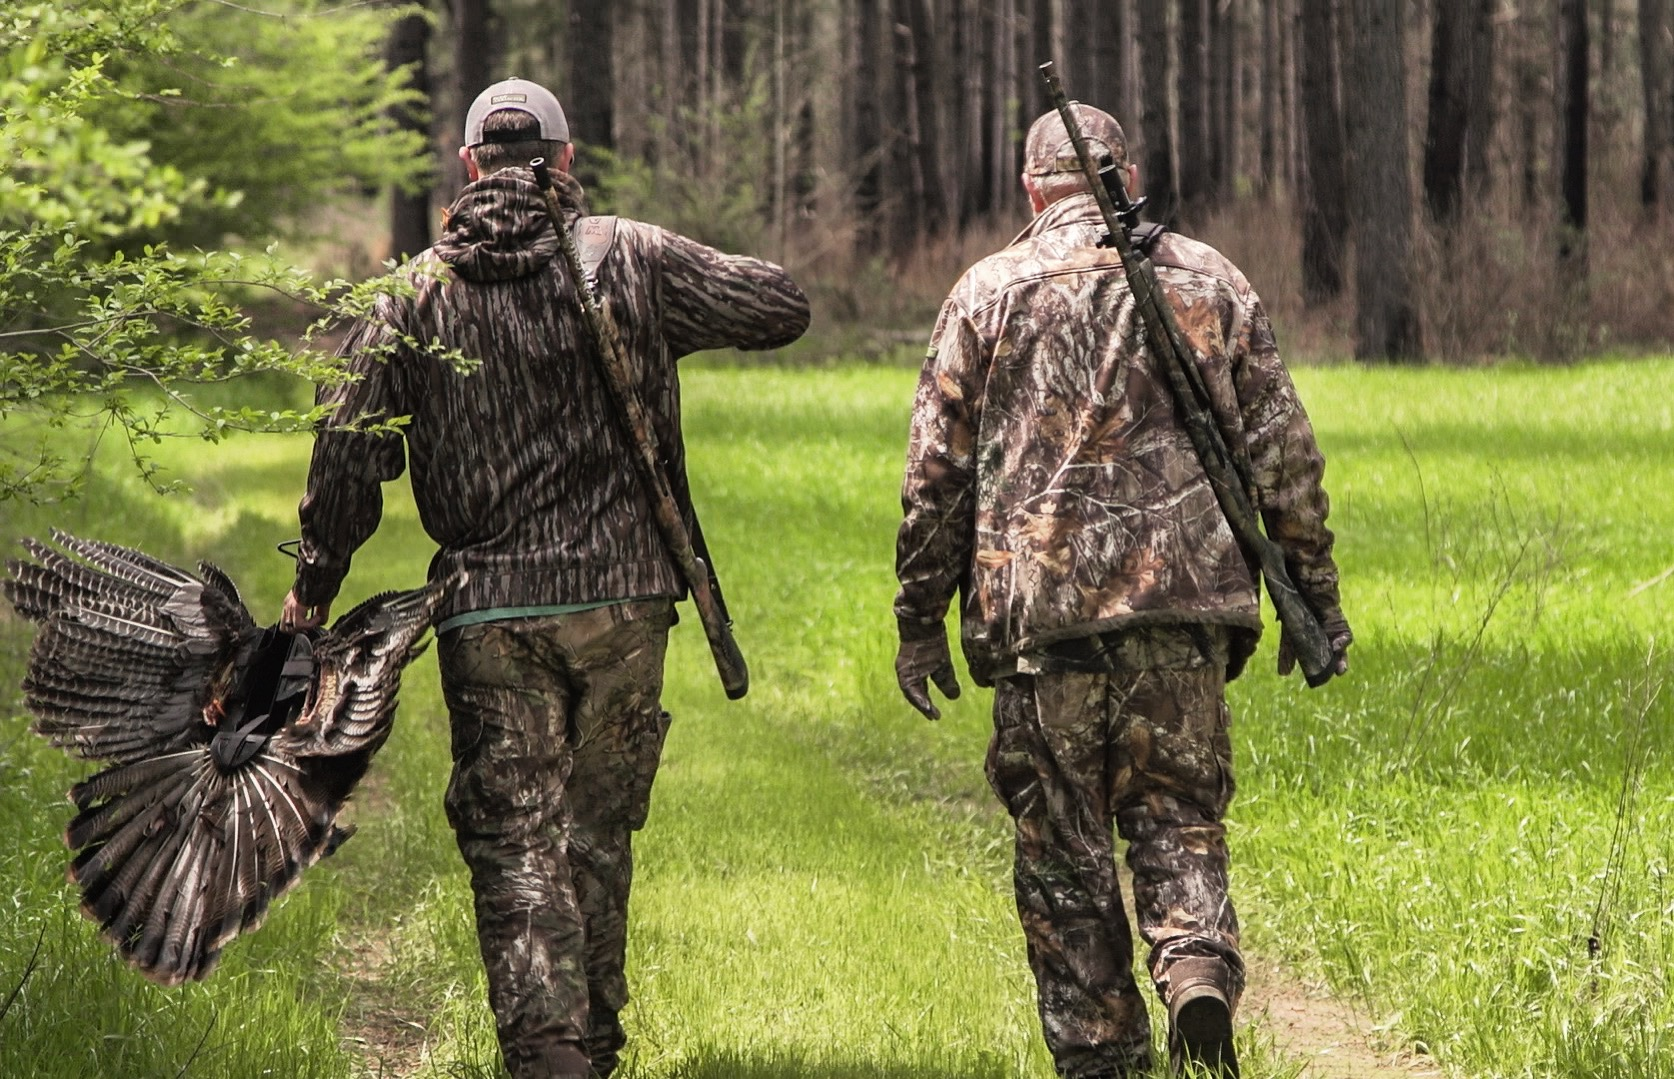 Bagging Birds - The 5 Best Turkey Hunting Loads for Shotguns